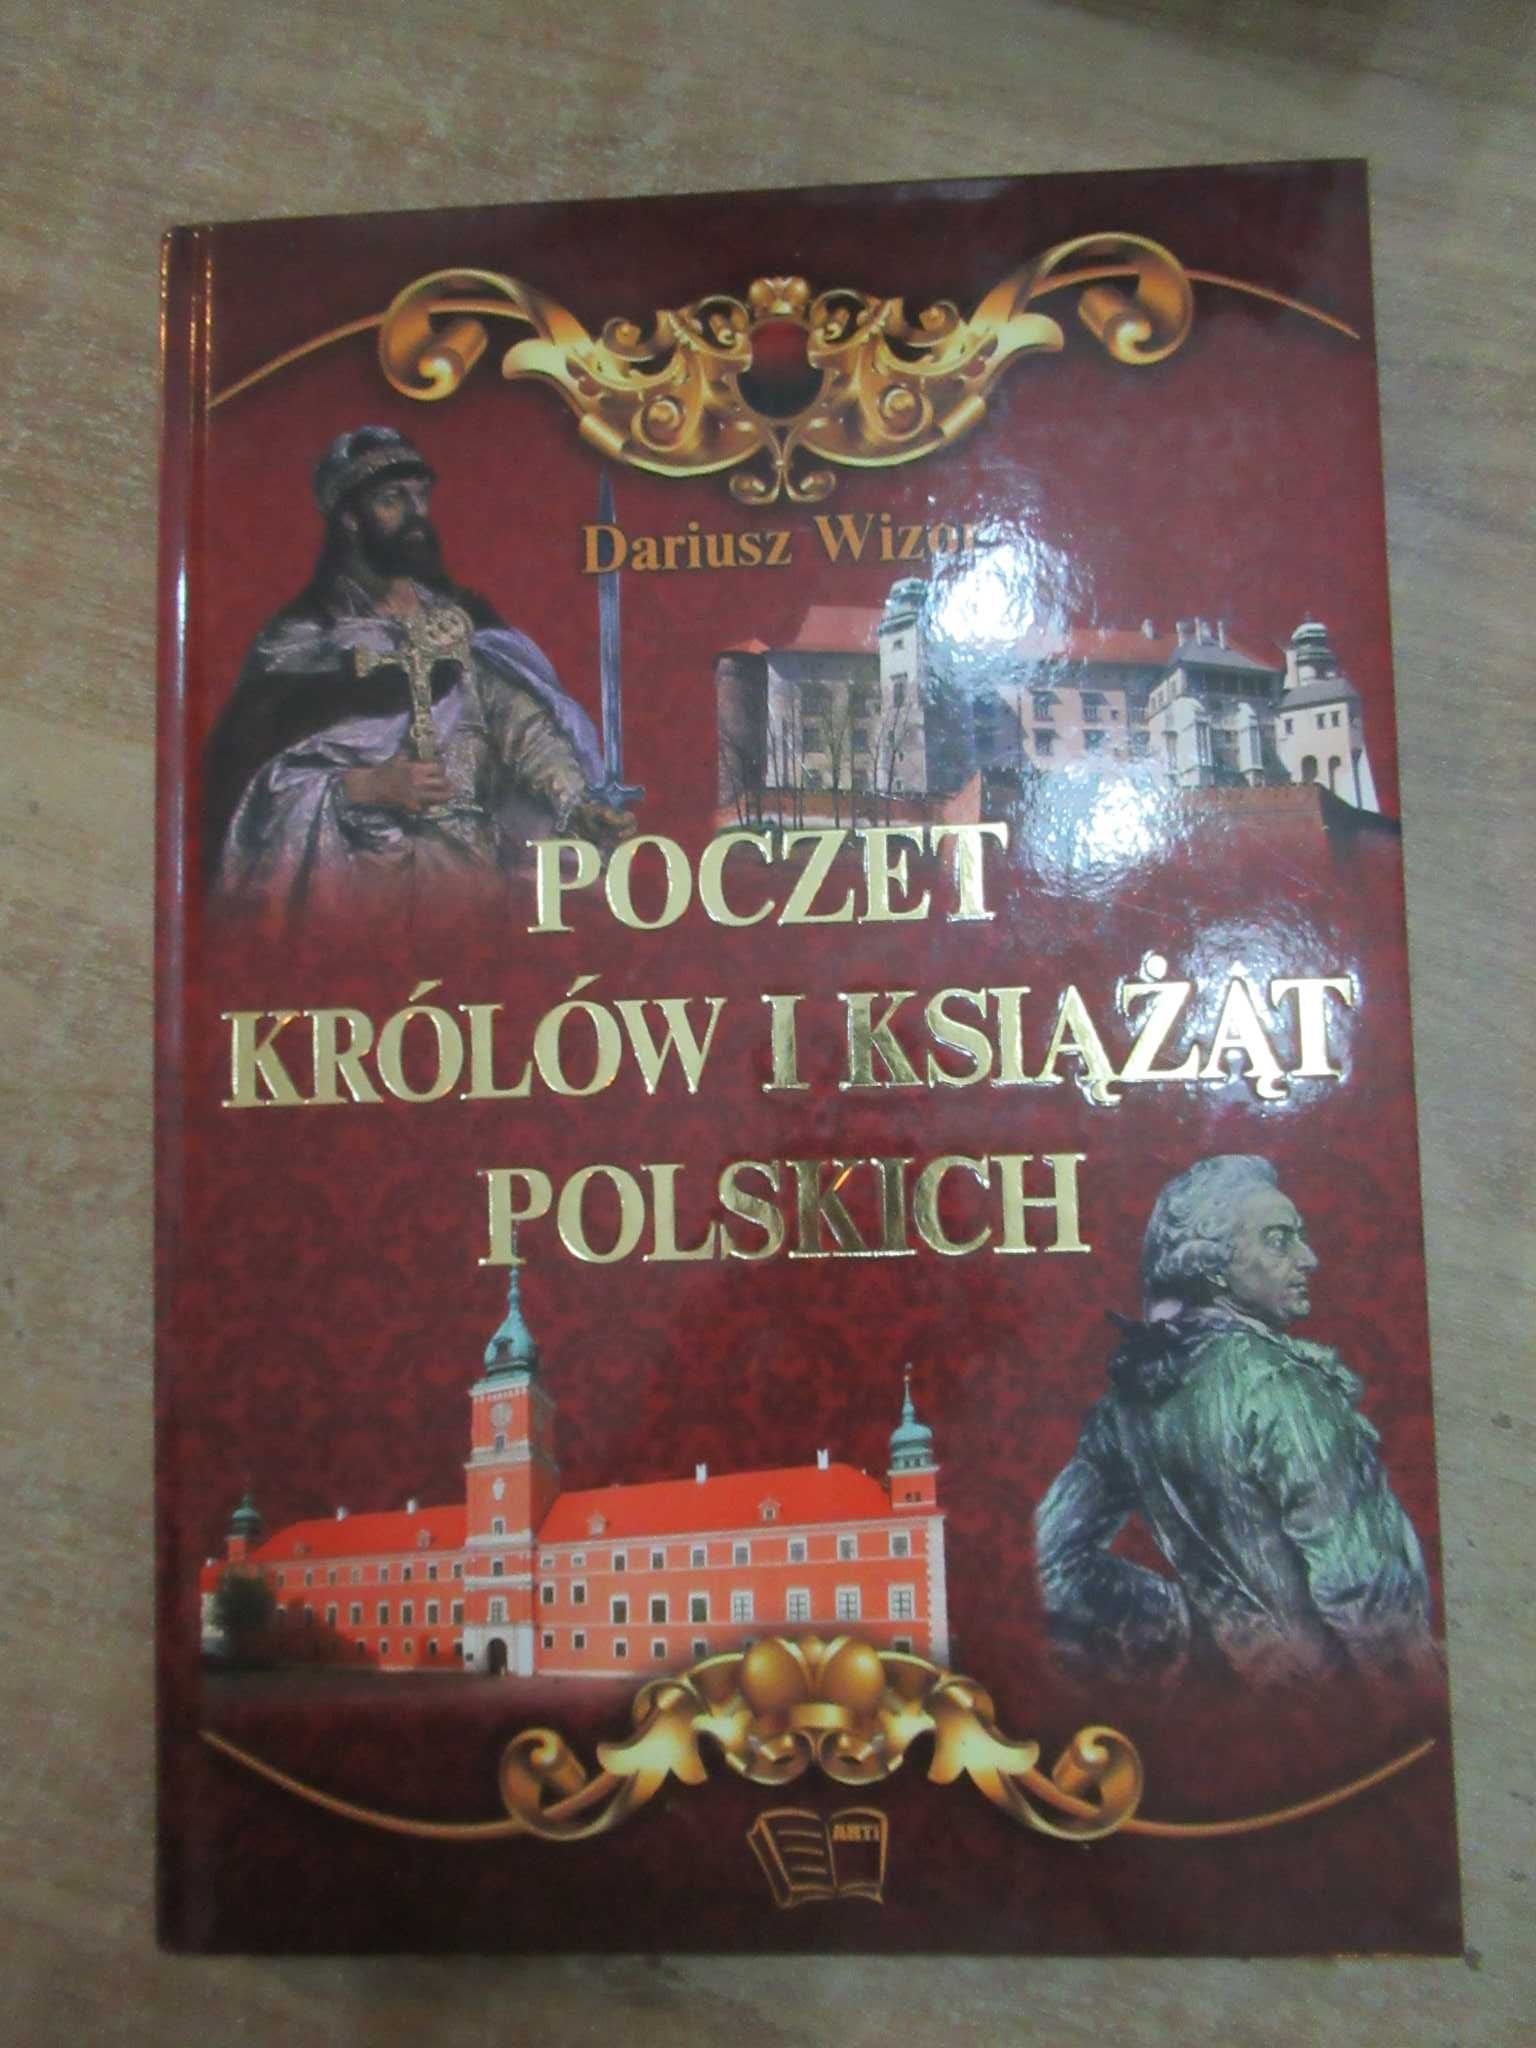 Książka "Poczet królów i książąt polskich"